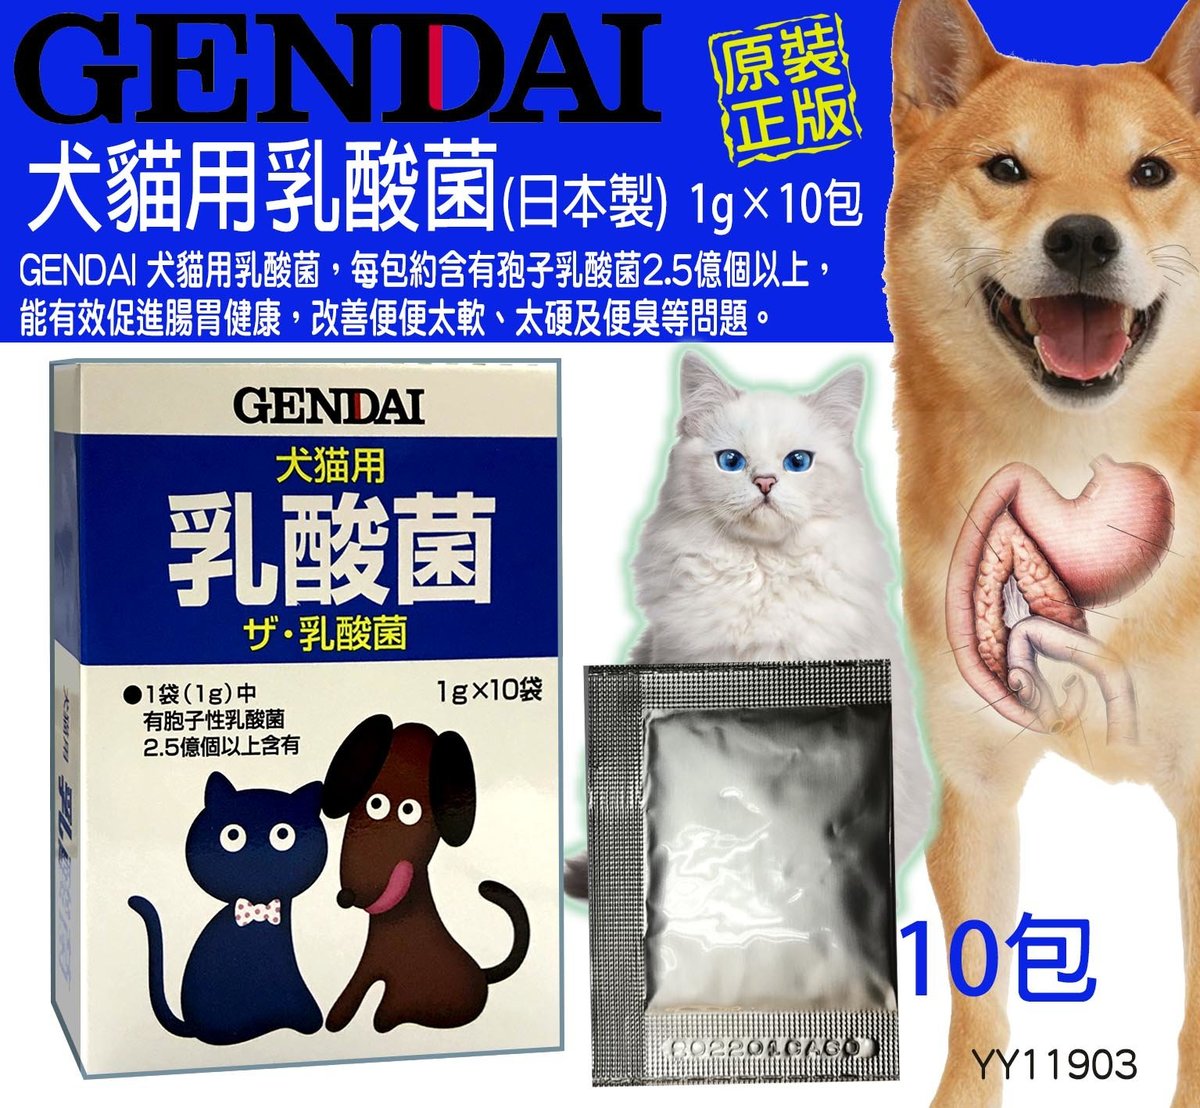 GENDAI | GENDAI - 犬貓用乳酸菌(粉劑) 1g×10包| HKTVmall 香港最大網購平台